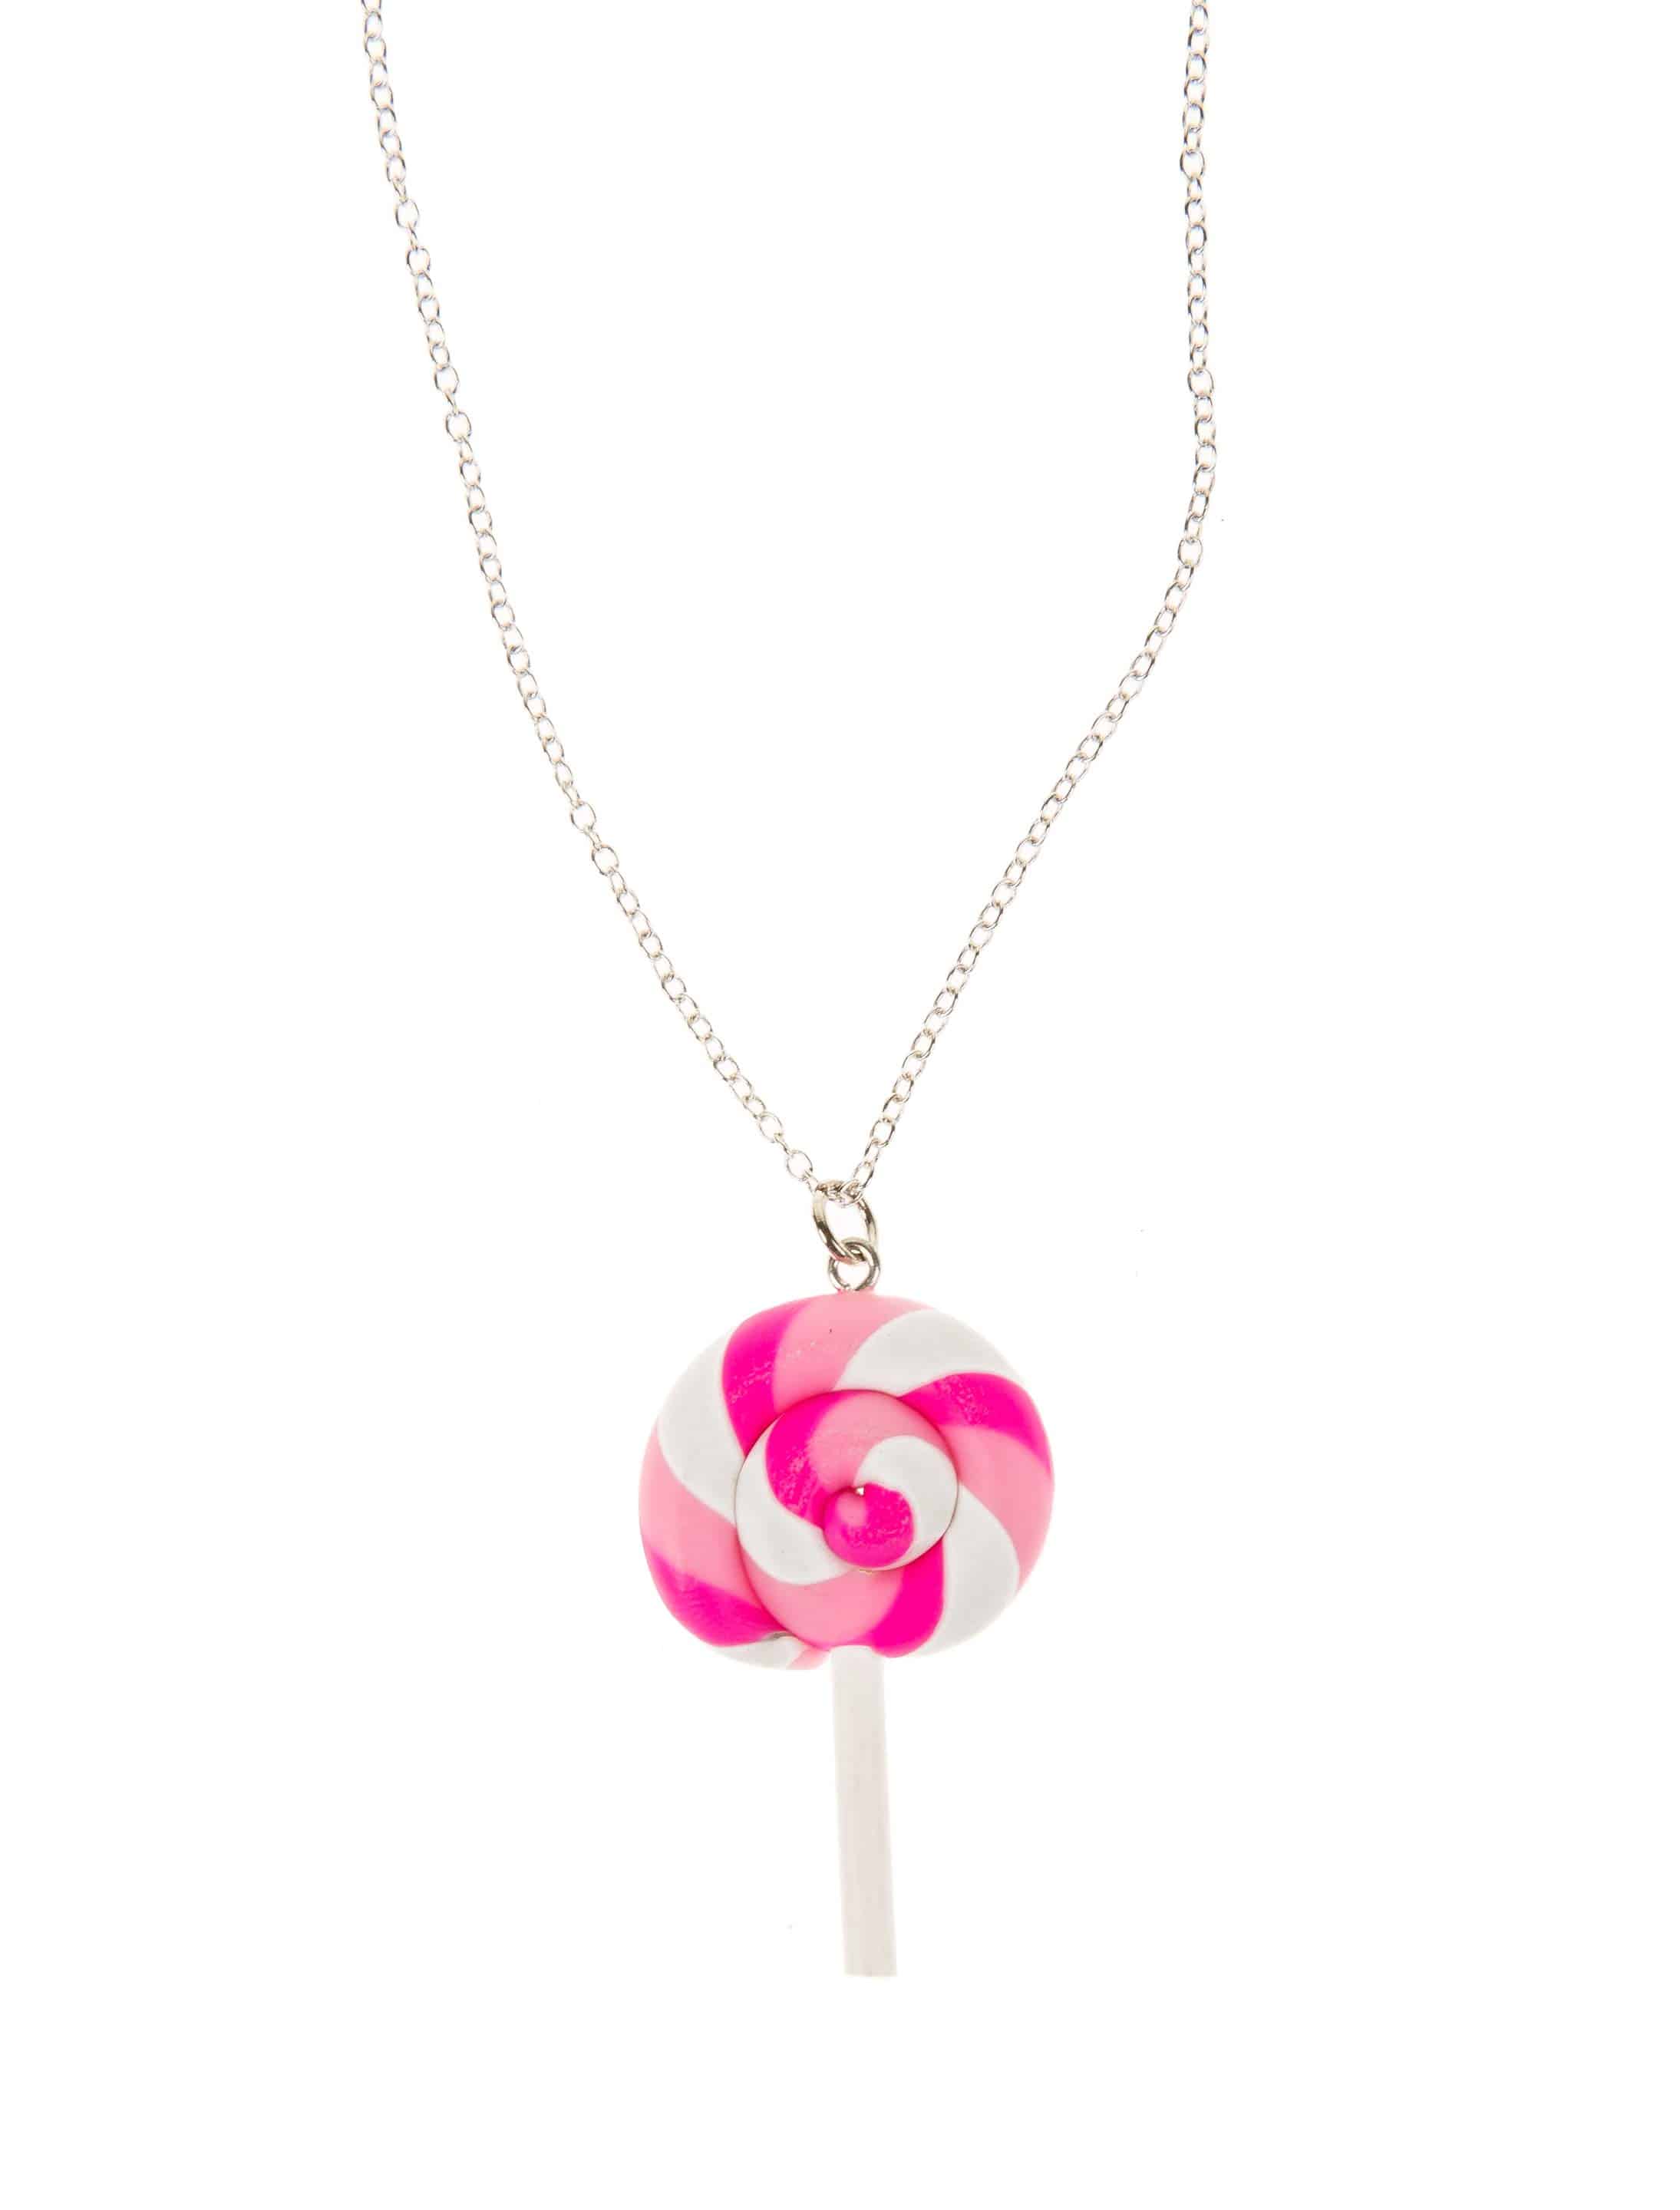 Halskette Candy Lolli pink/weiß